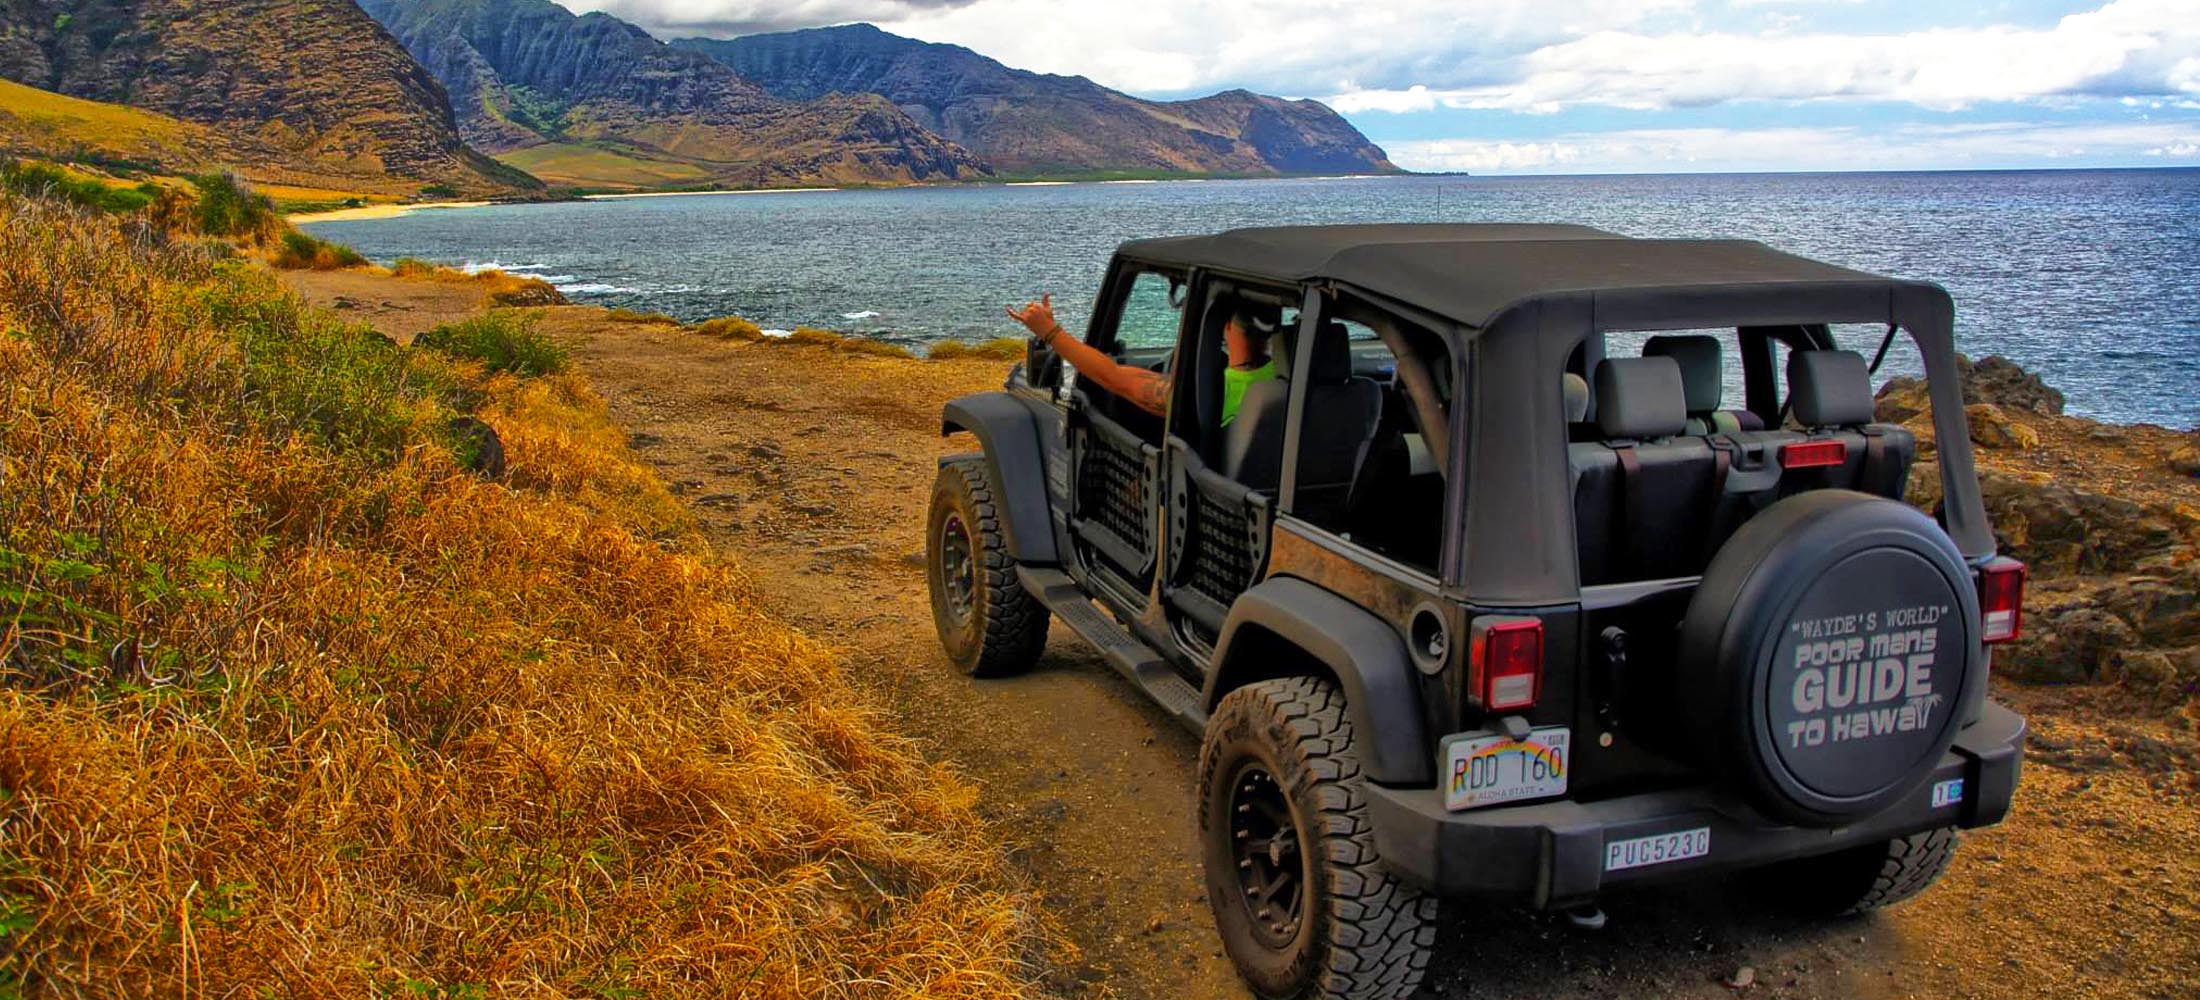 jeep tours kona hawaii